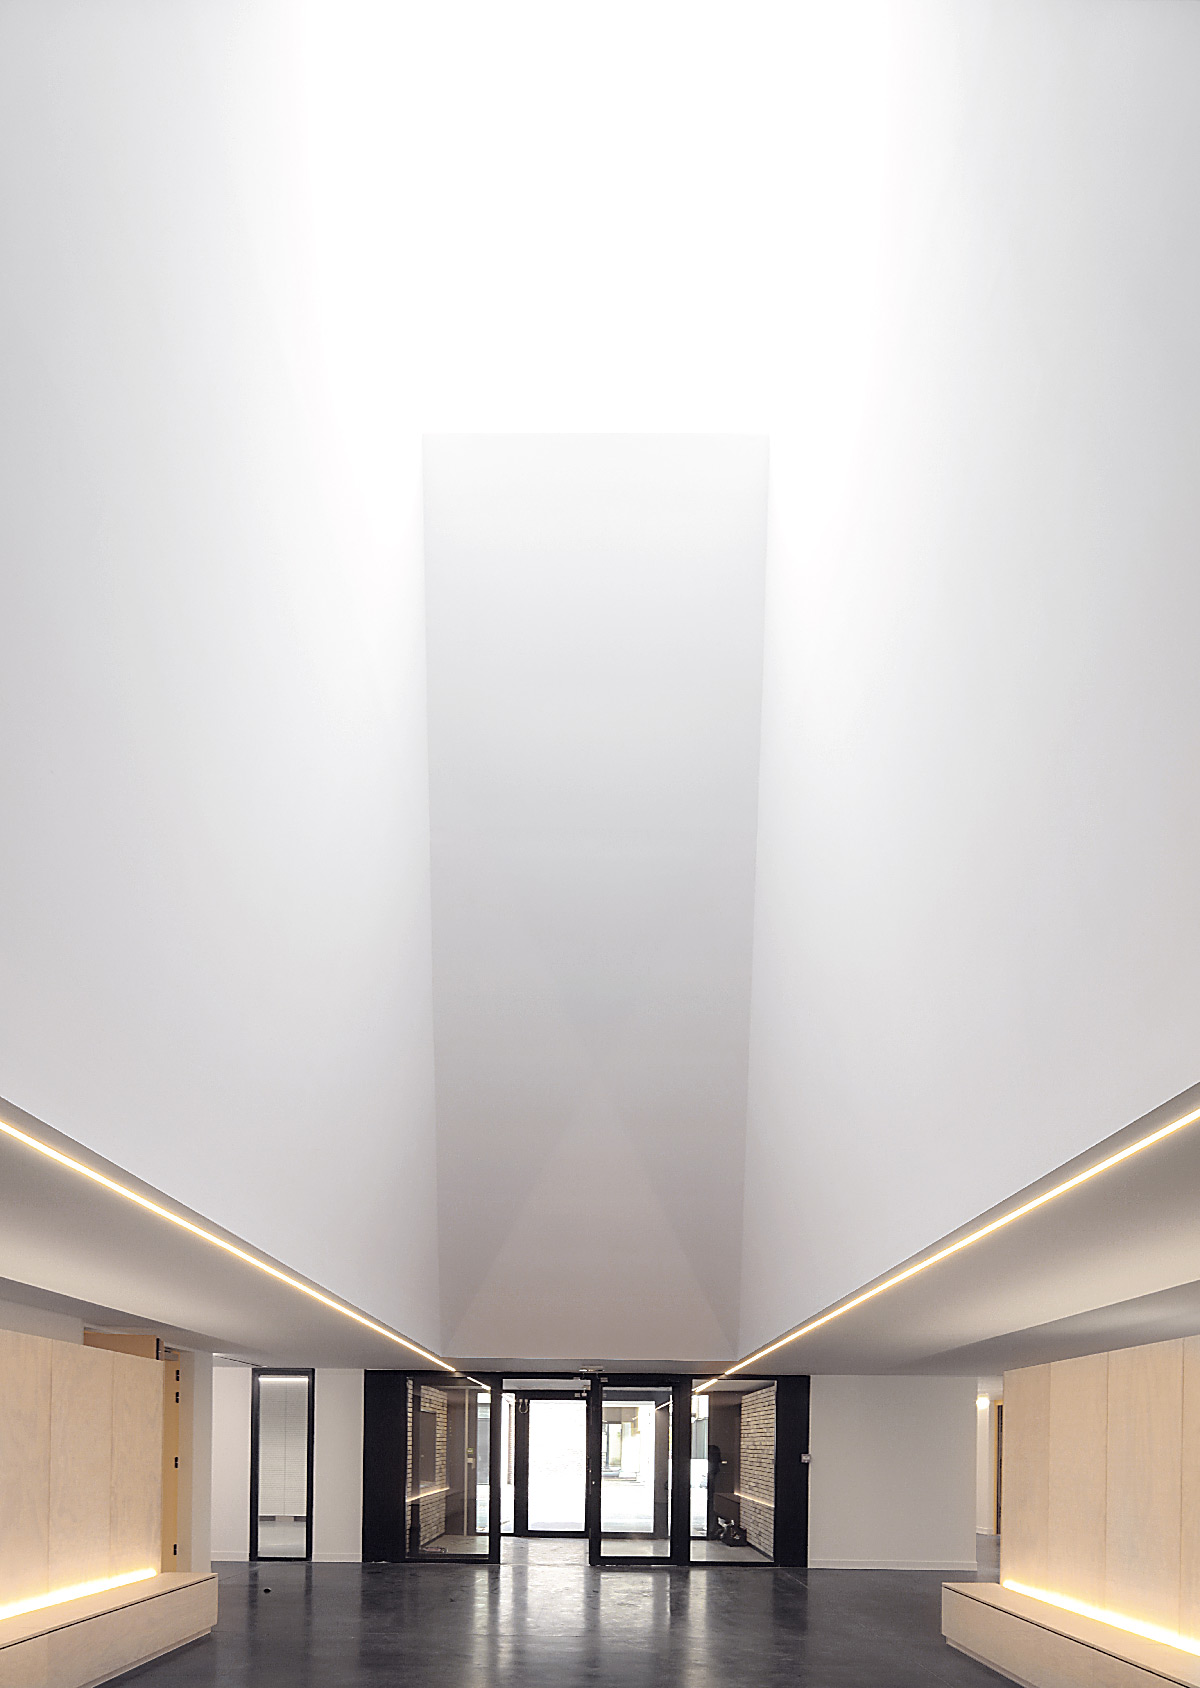 Puits de lumière du jour, école de musique, Élancourt, France - Opus 5 architectes